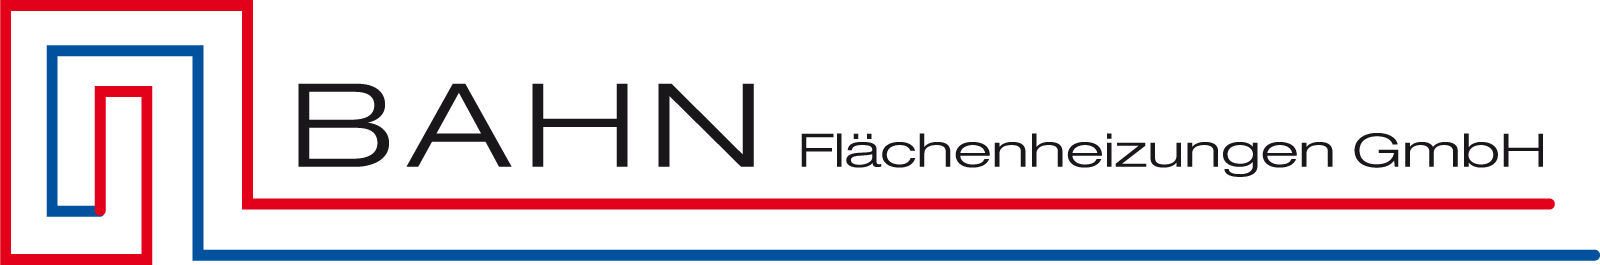 Bahn Flächenheizungen Logo